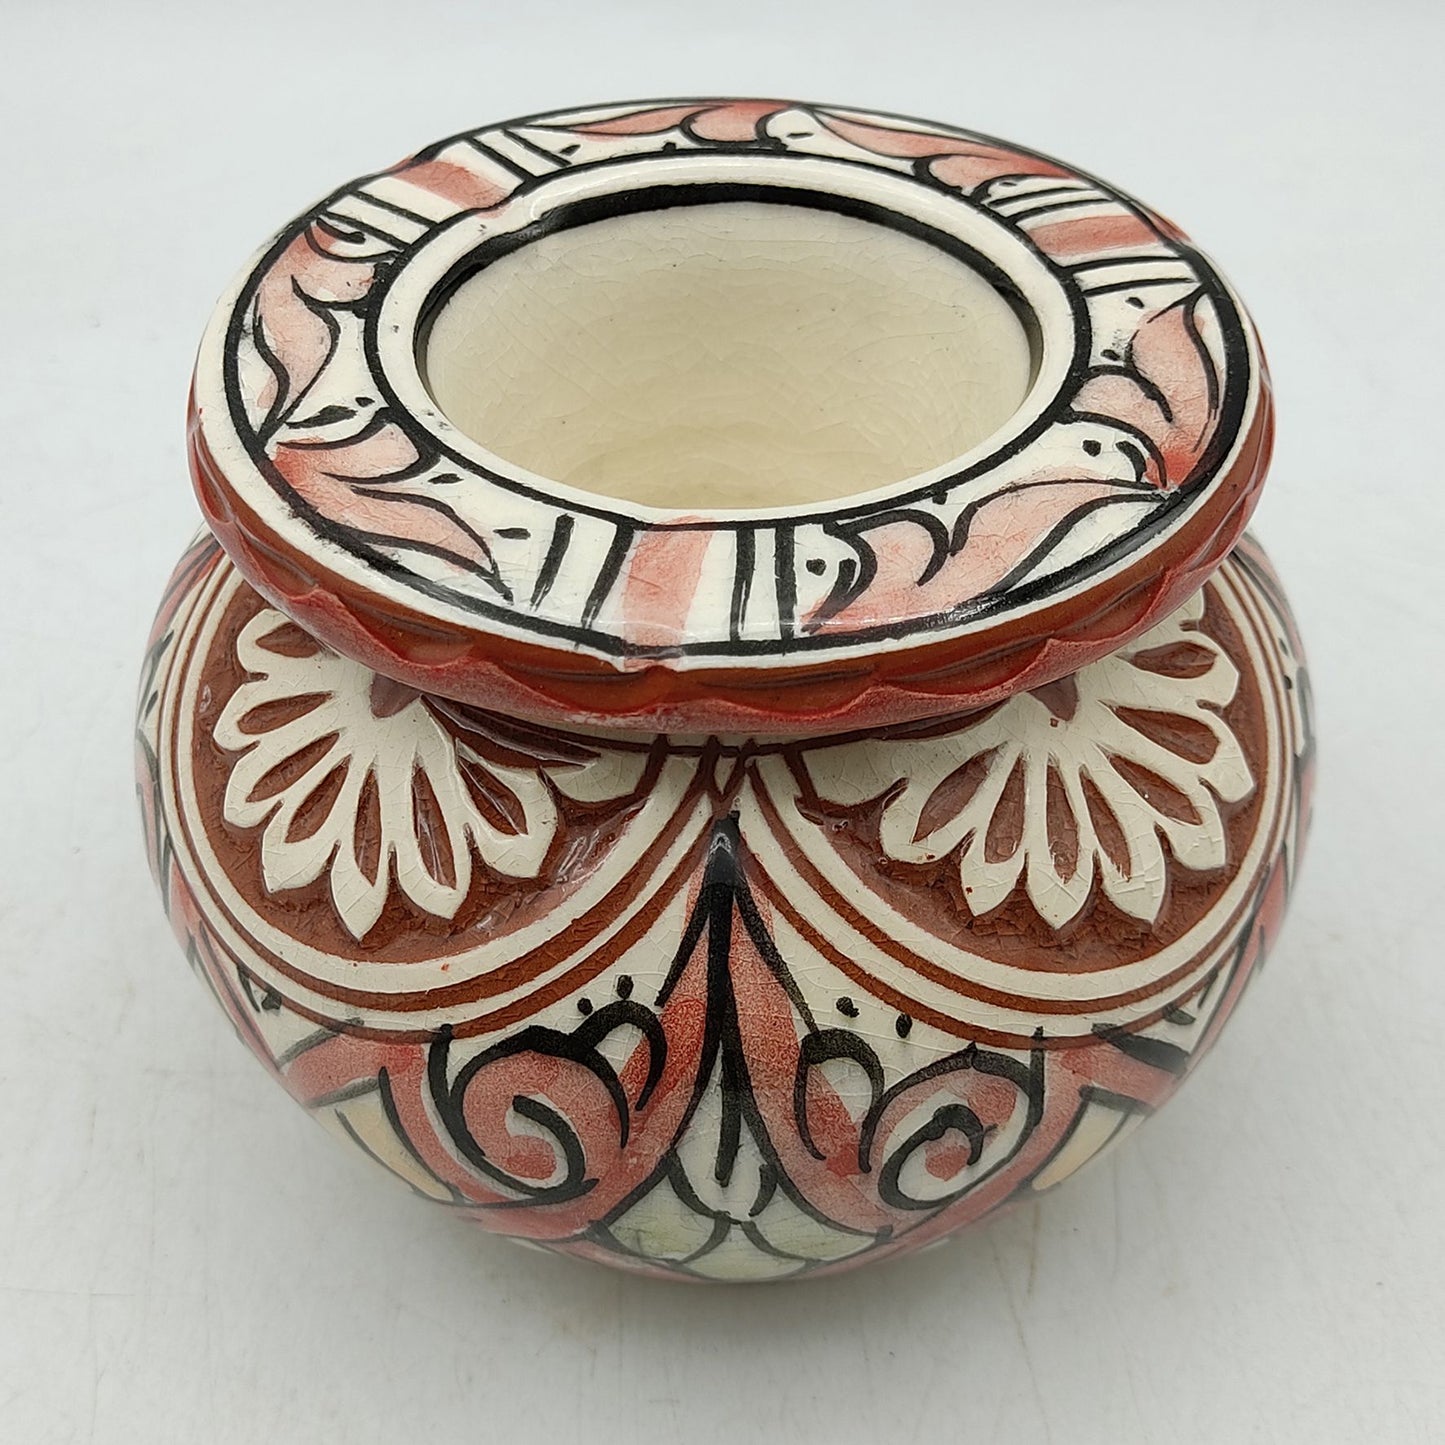 Posacenere Ceramica Antiodore Terracotta Etnico Marocco Marocchina 2511211307